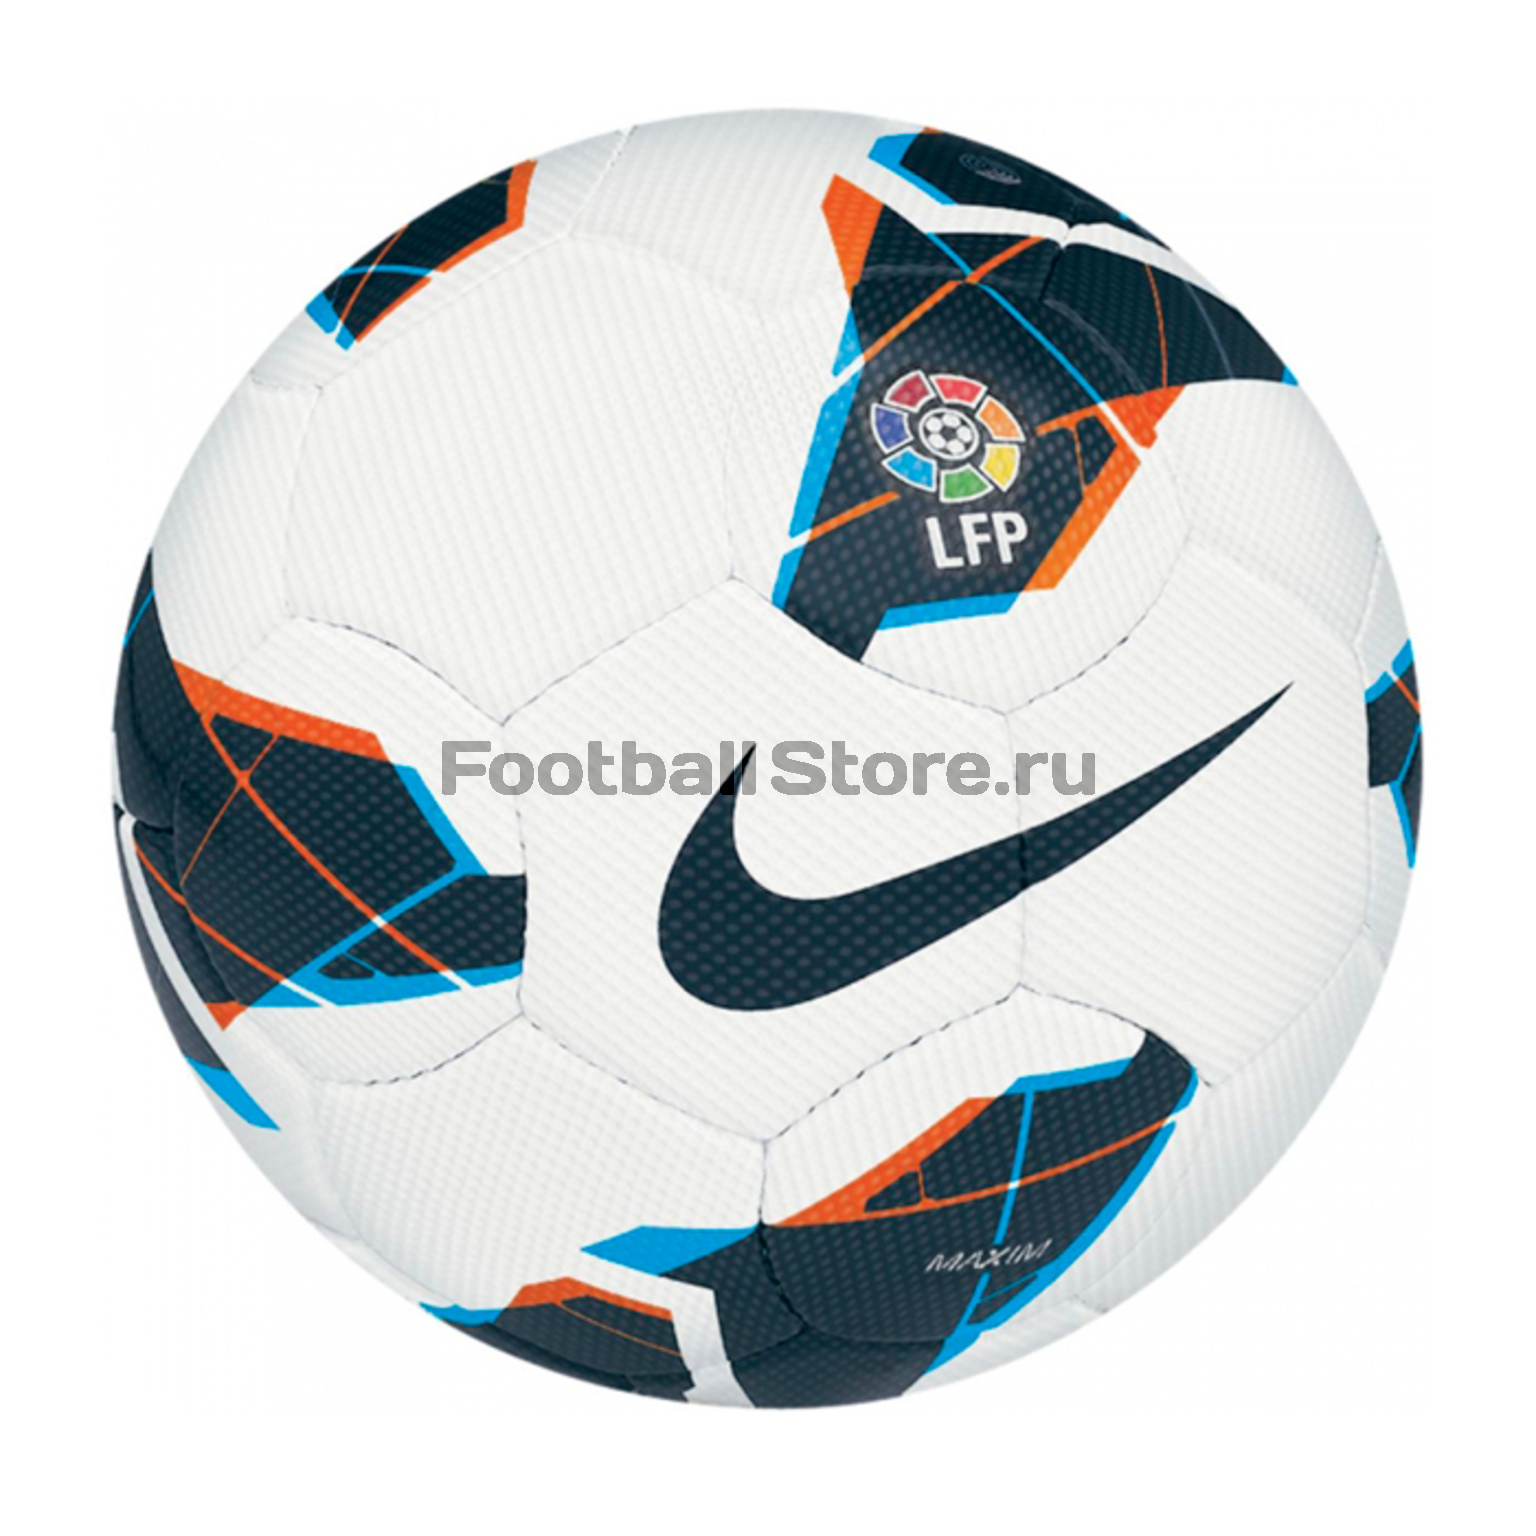 Мяч футбольный Nike Maxim LFP SC2130-103